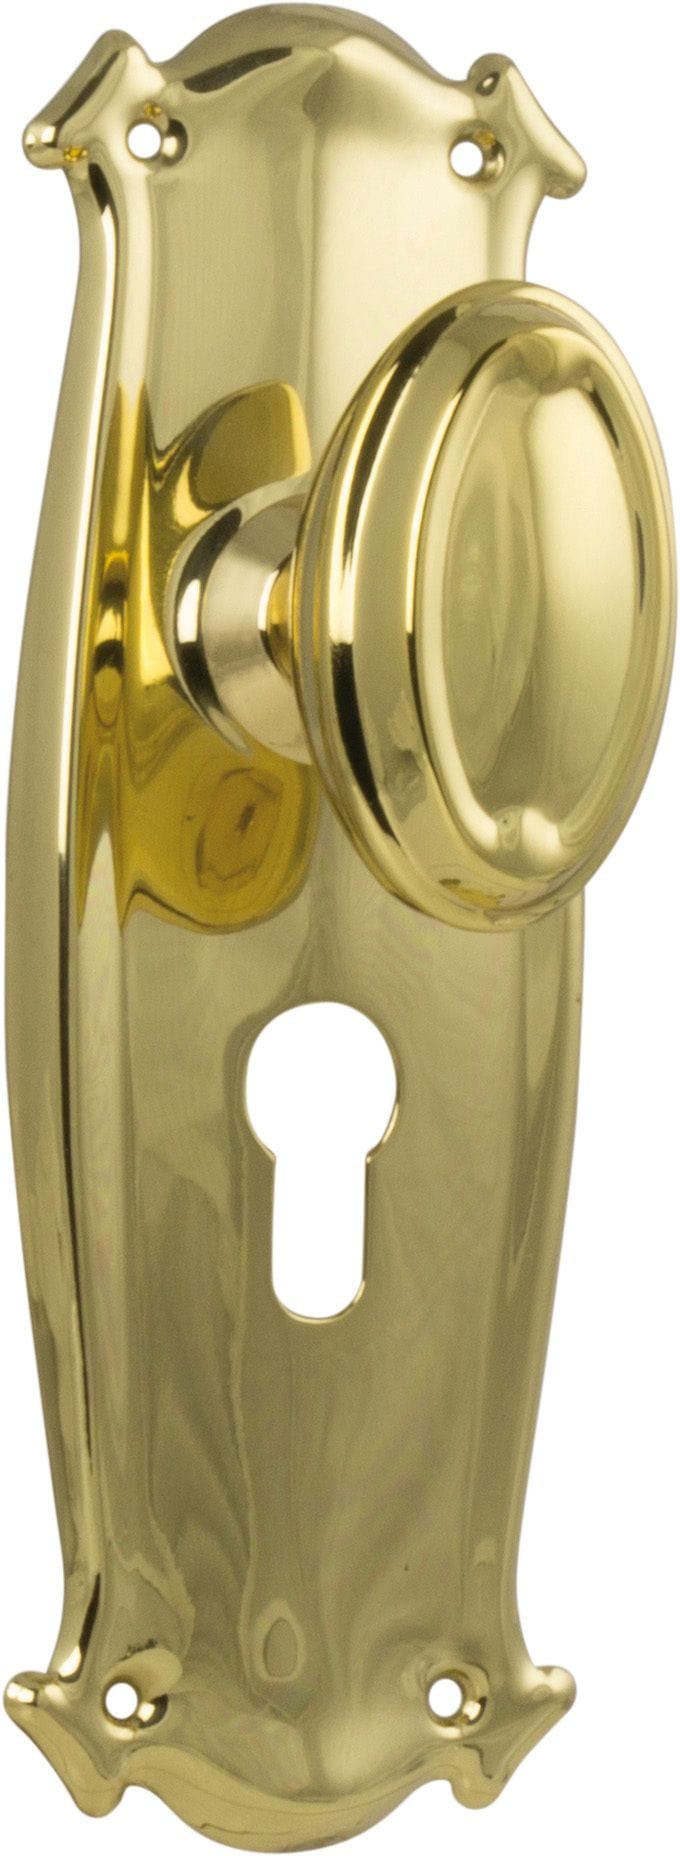 Bungalow Knob Euro Polished Brass